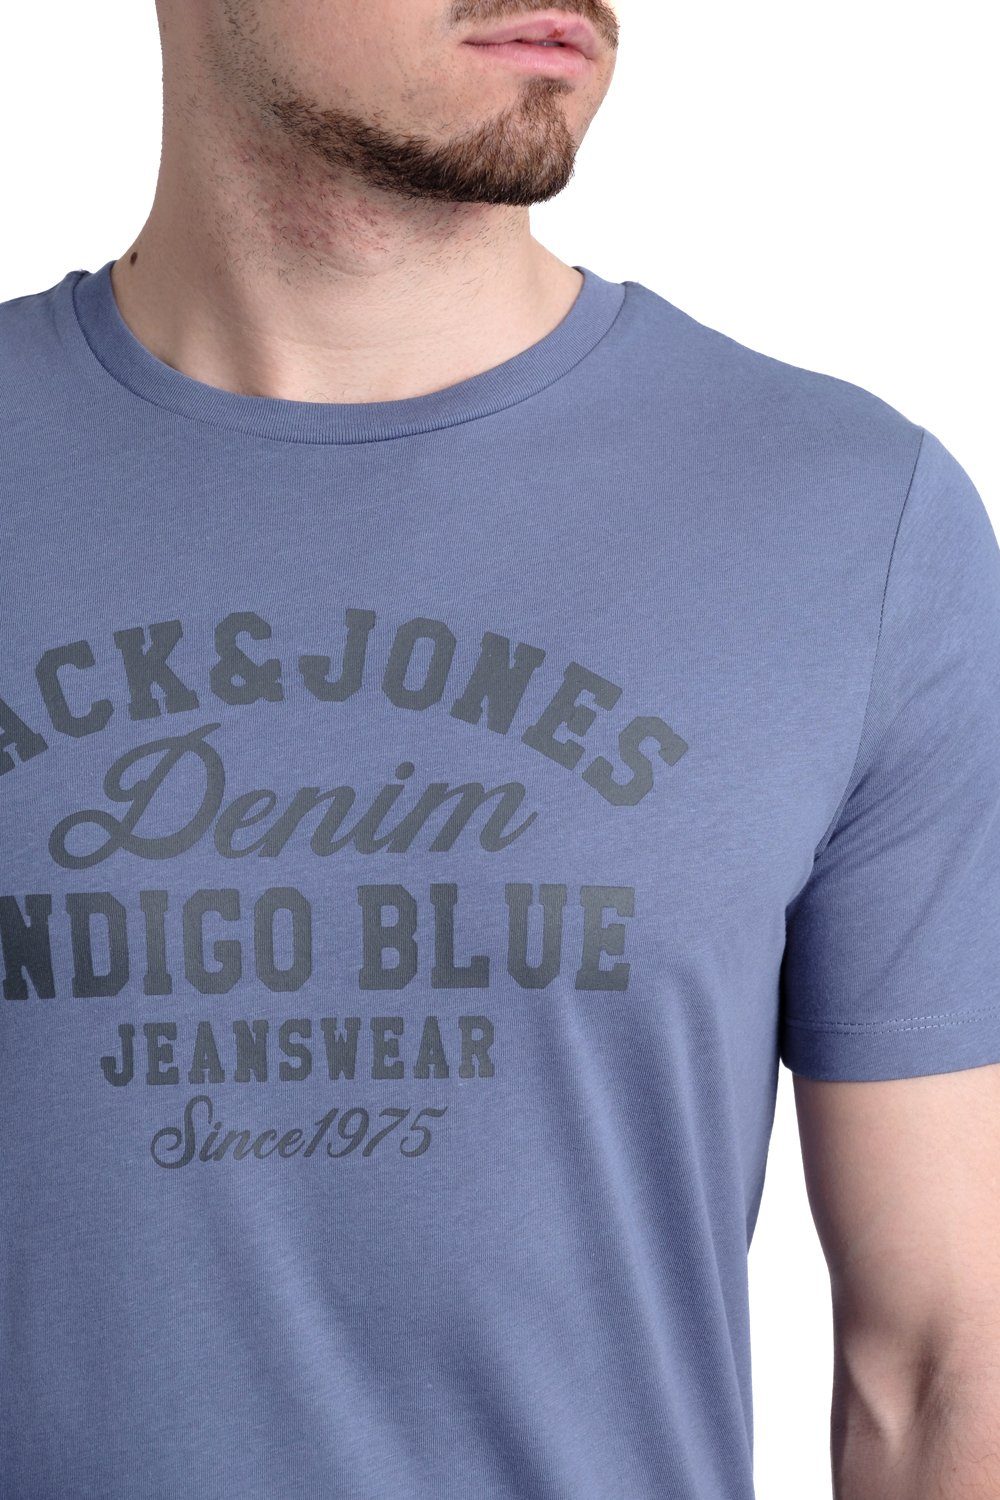 Jones Jack & aus 6 Print-Shirt mit T-Shirt Aufdruck OPT Baumwolle